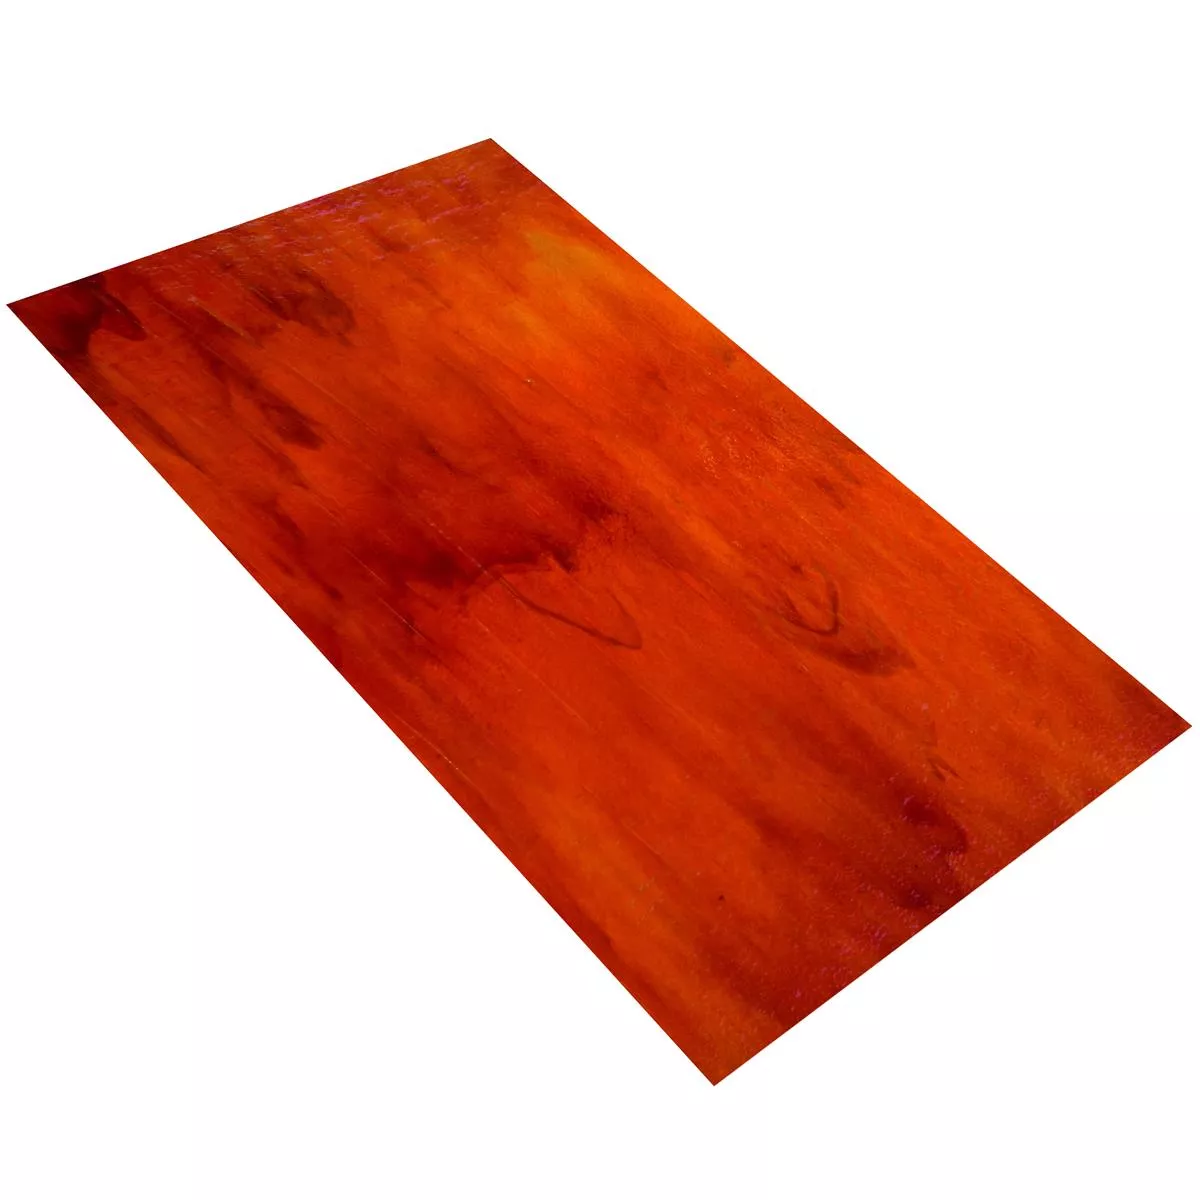 Staklo Zidne Pločice Trend-Vi Supreme Outback Red 30x60cm